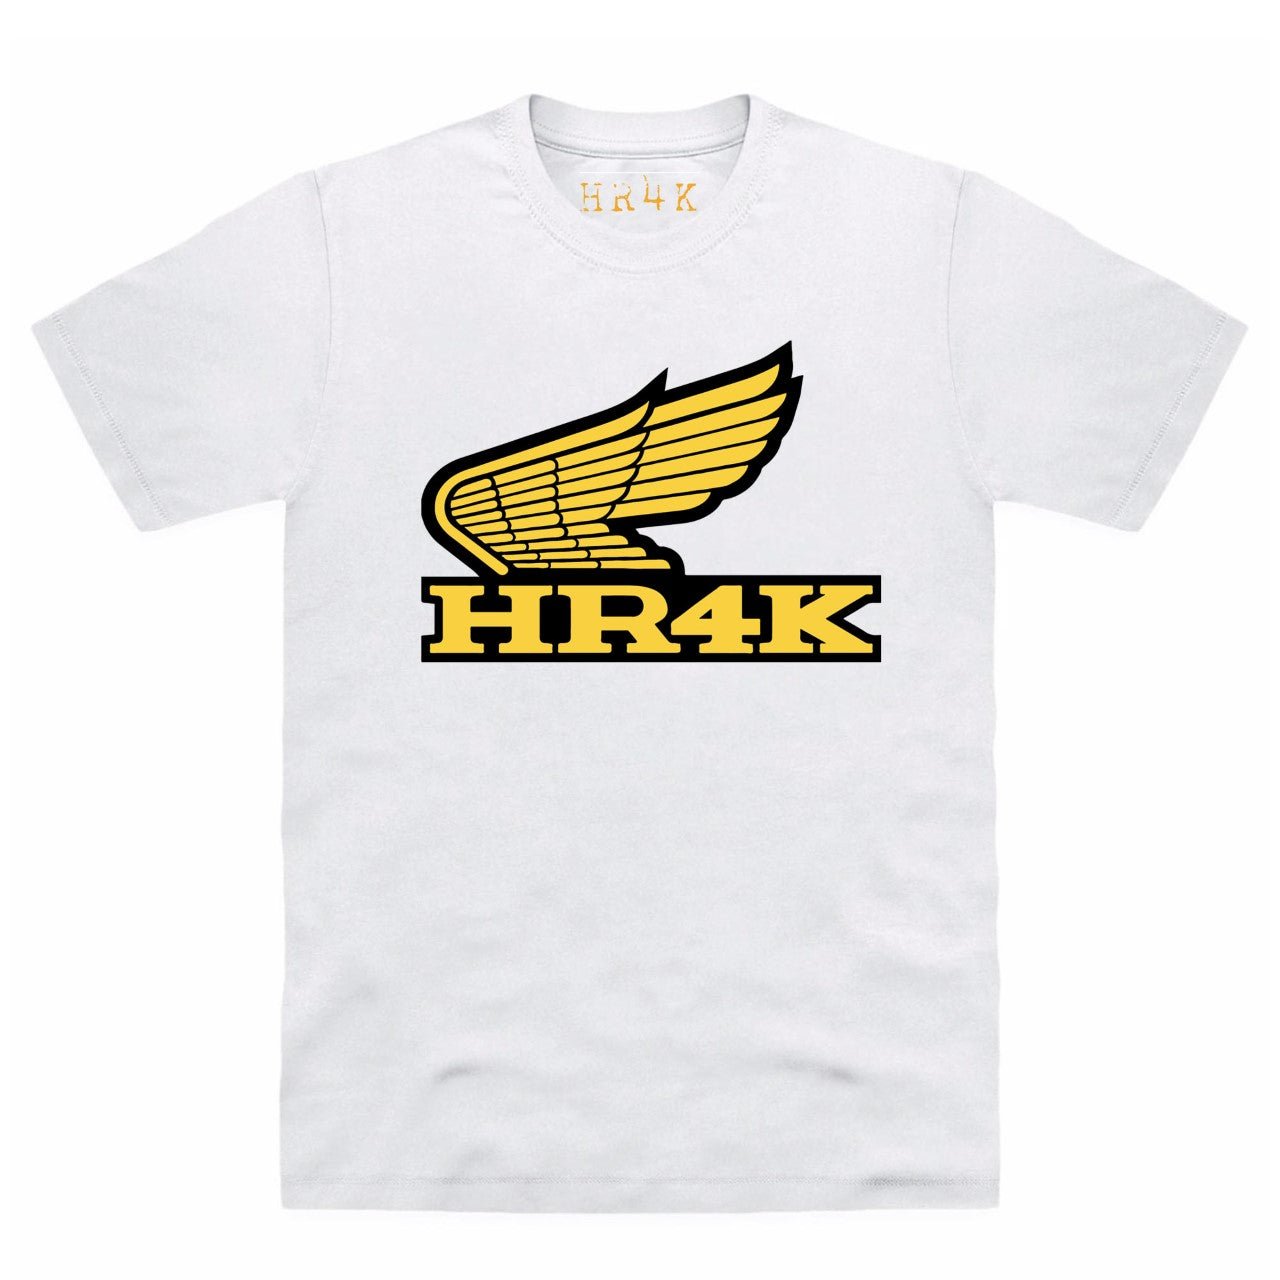 HR4K - Bike Club Tee - HR4K